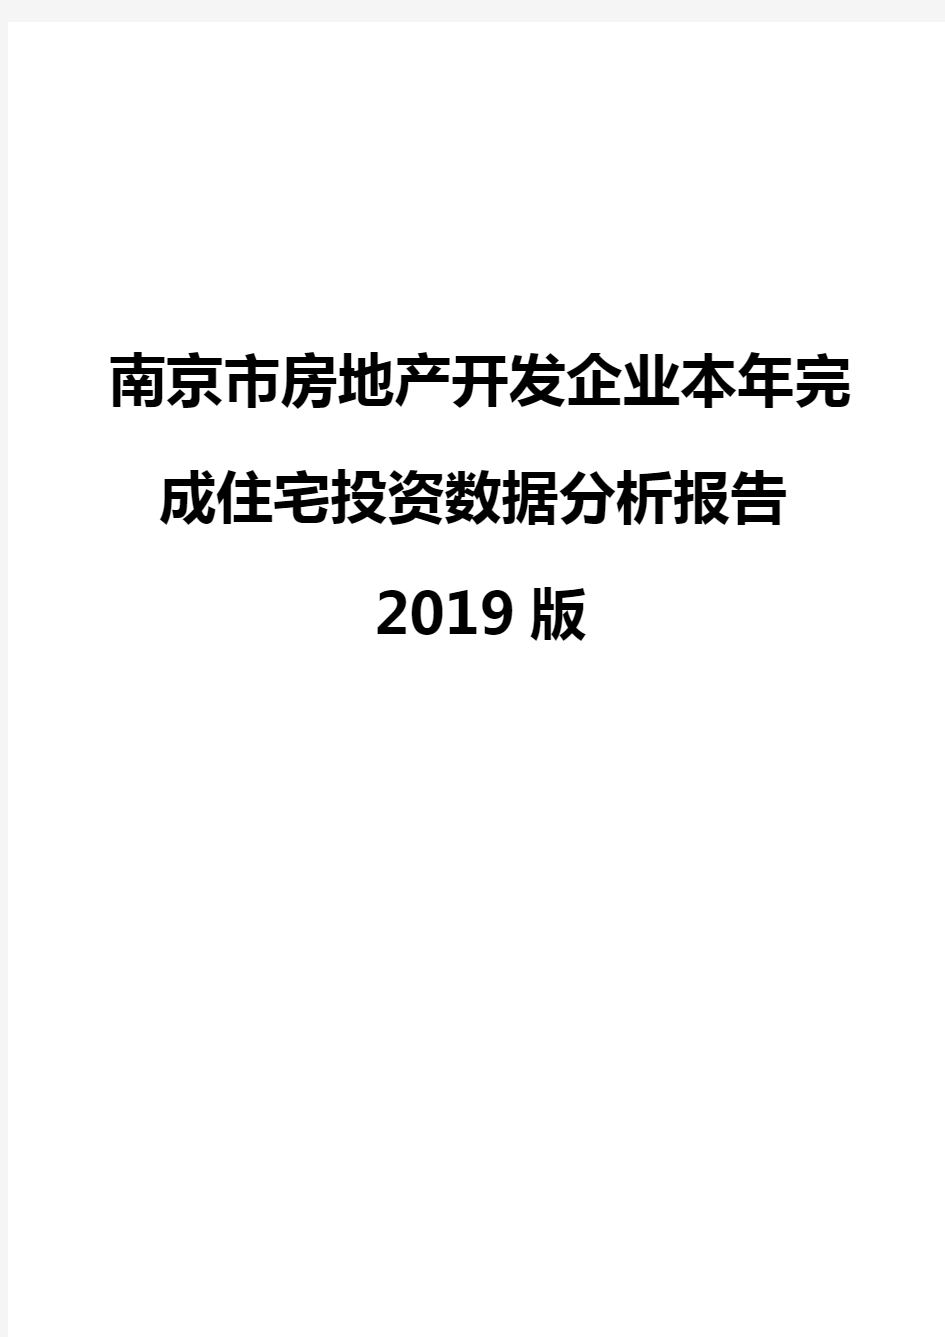 南京市房地产开发企业本年完成住宅投资数据分析报告2019版